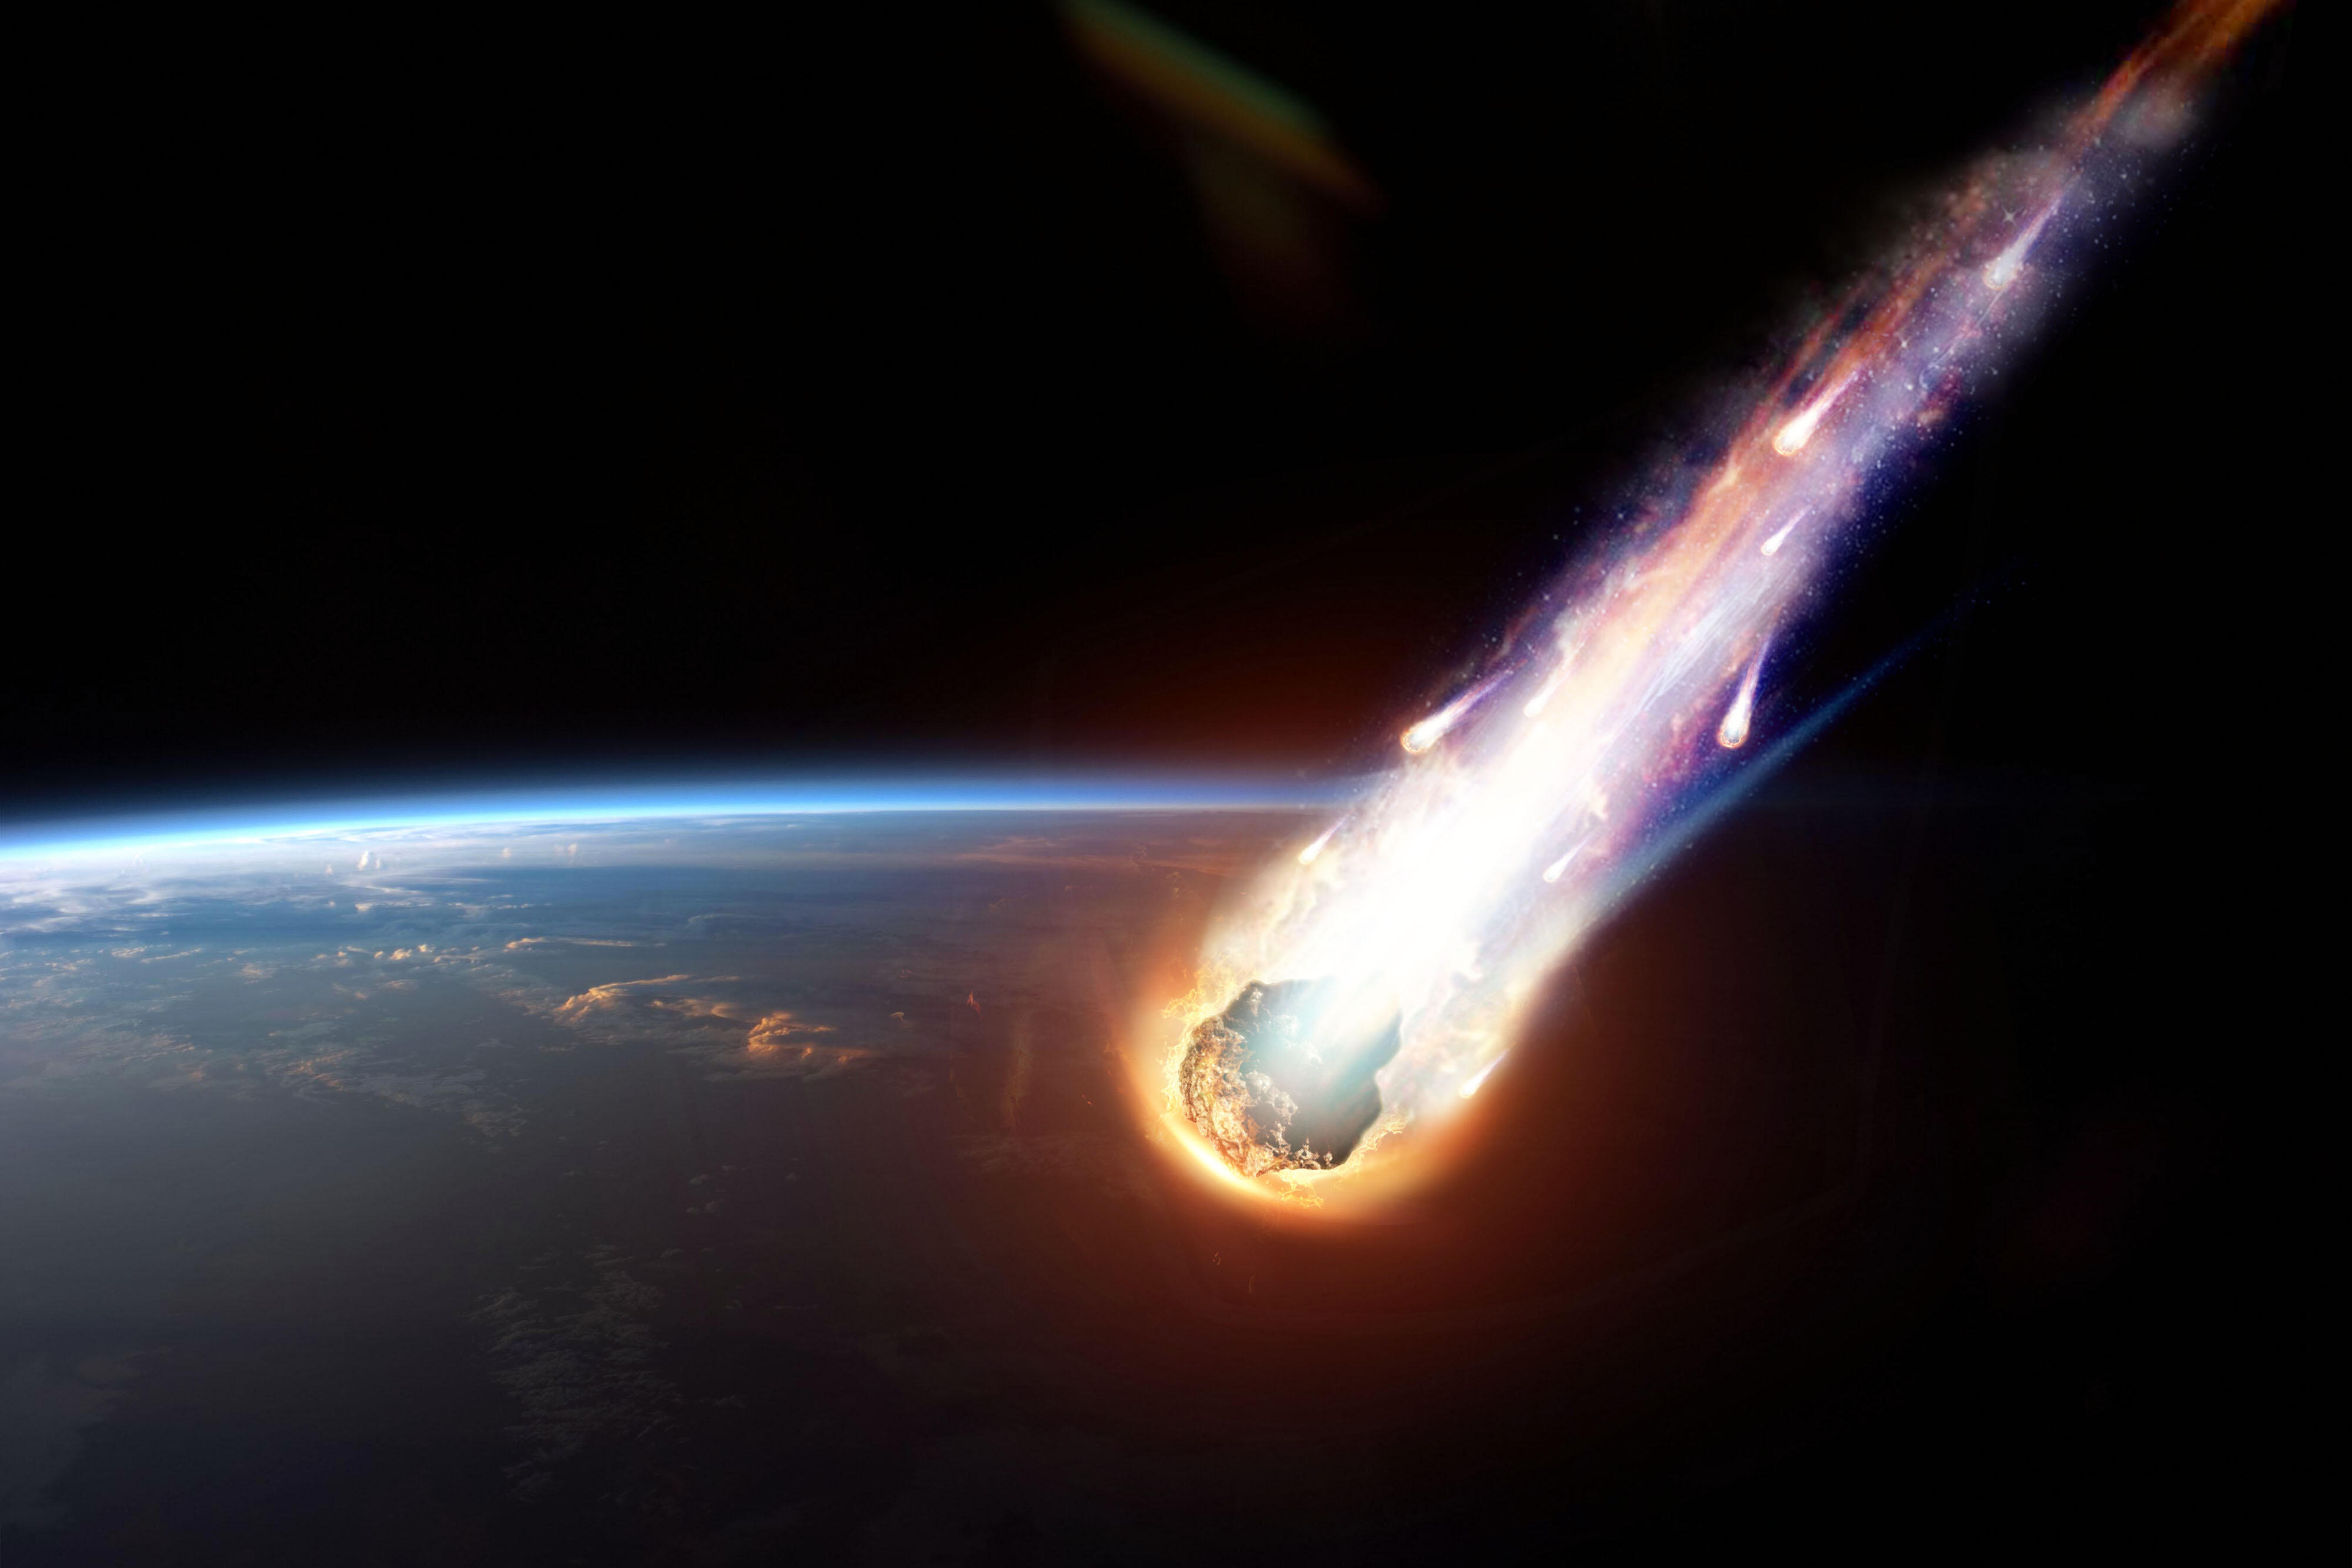 Метеорит сгорает в атмосфере